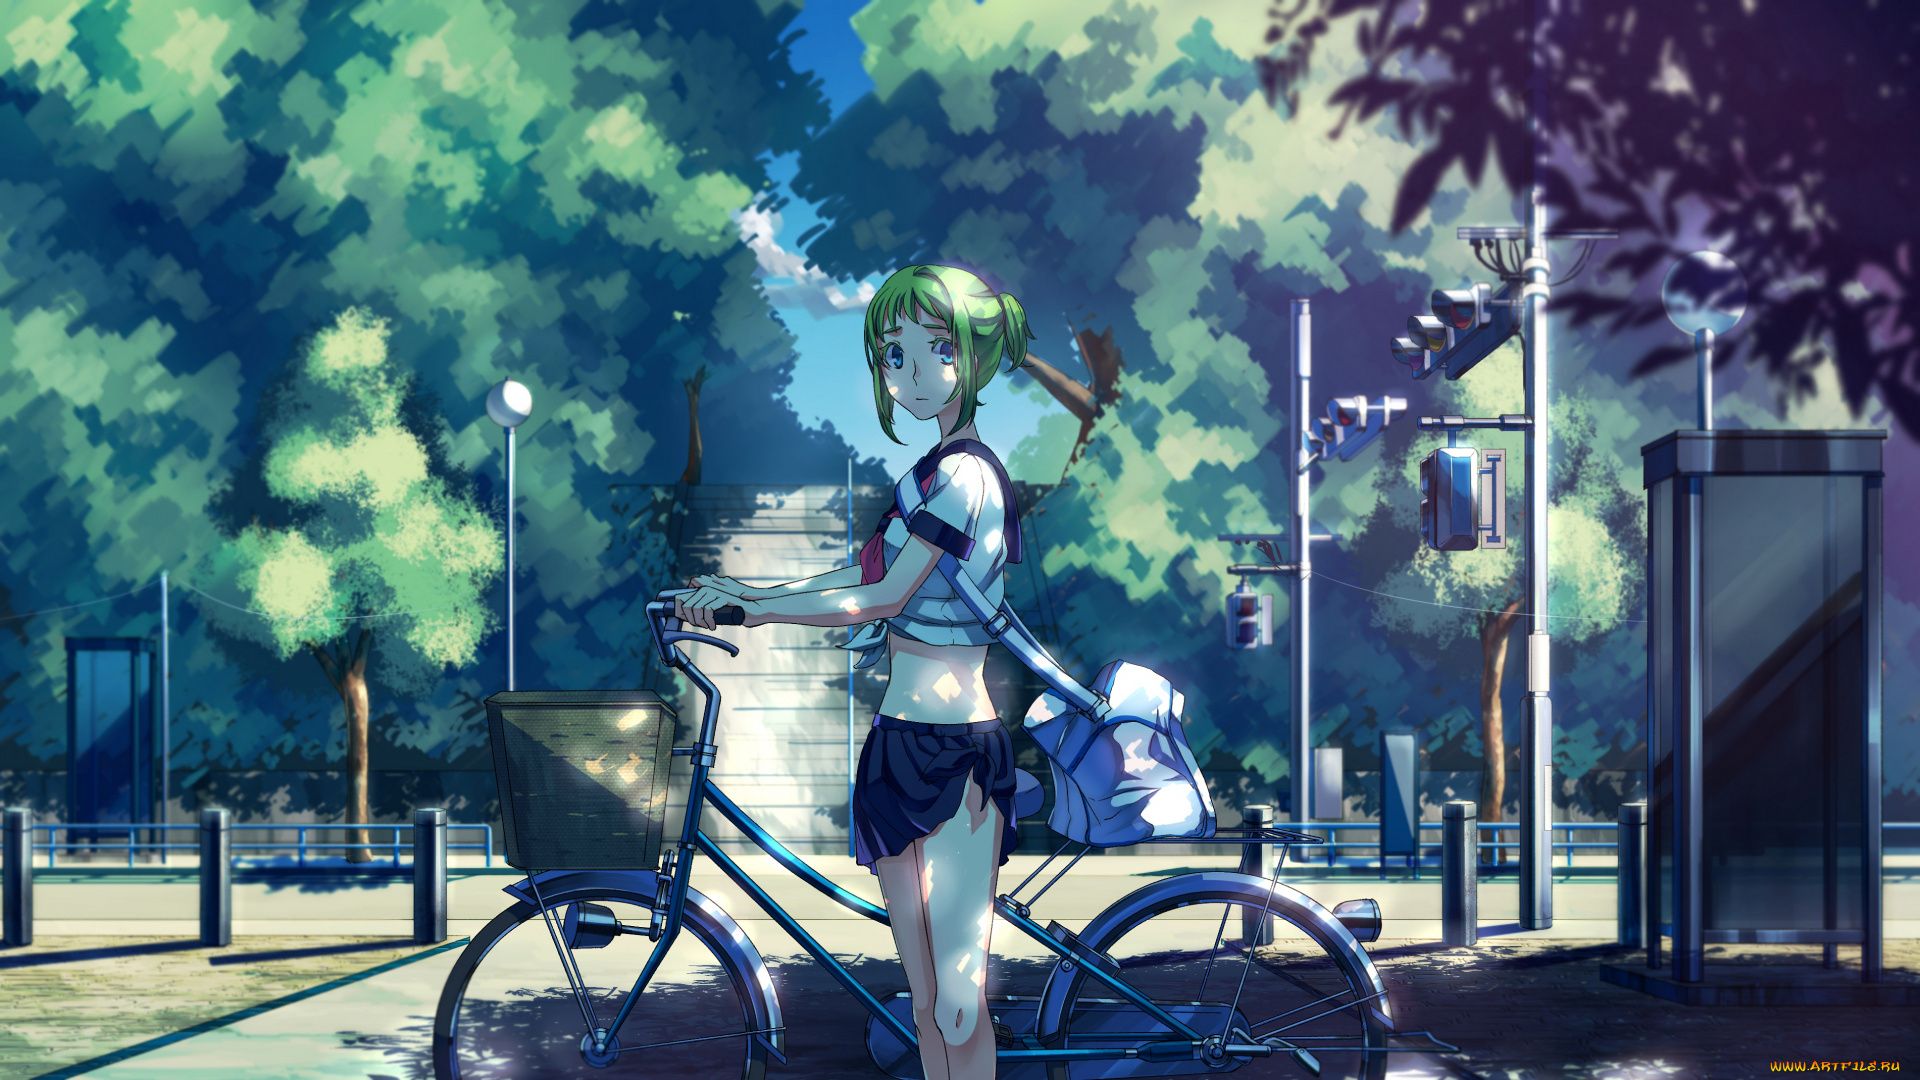 Anime Art Bike